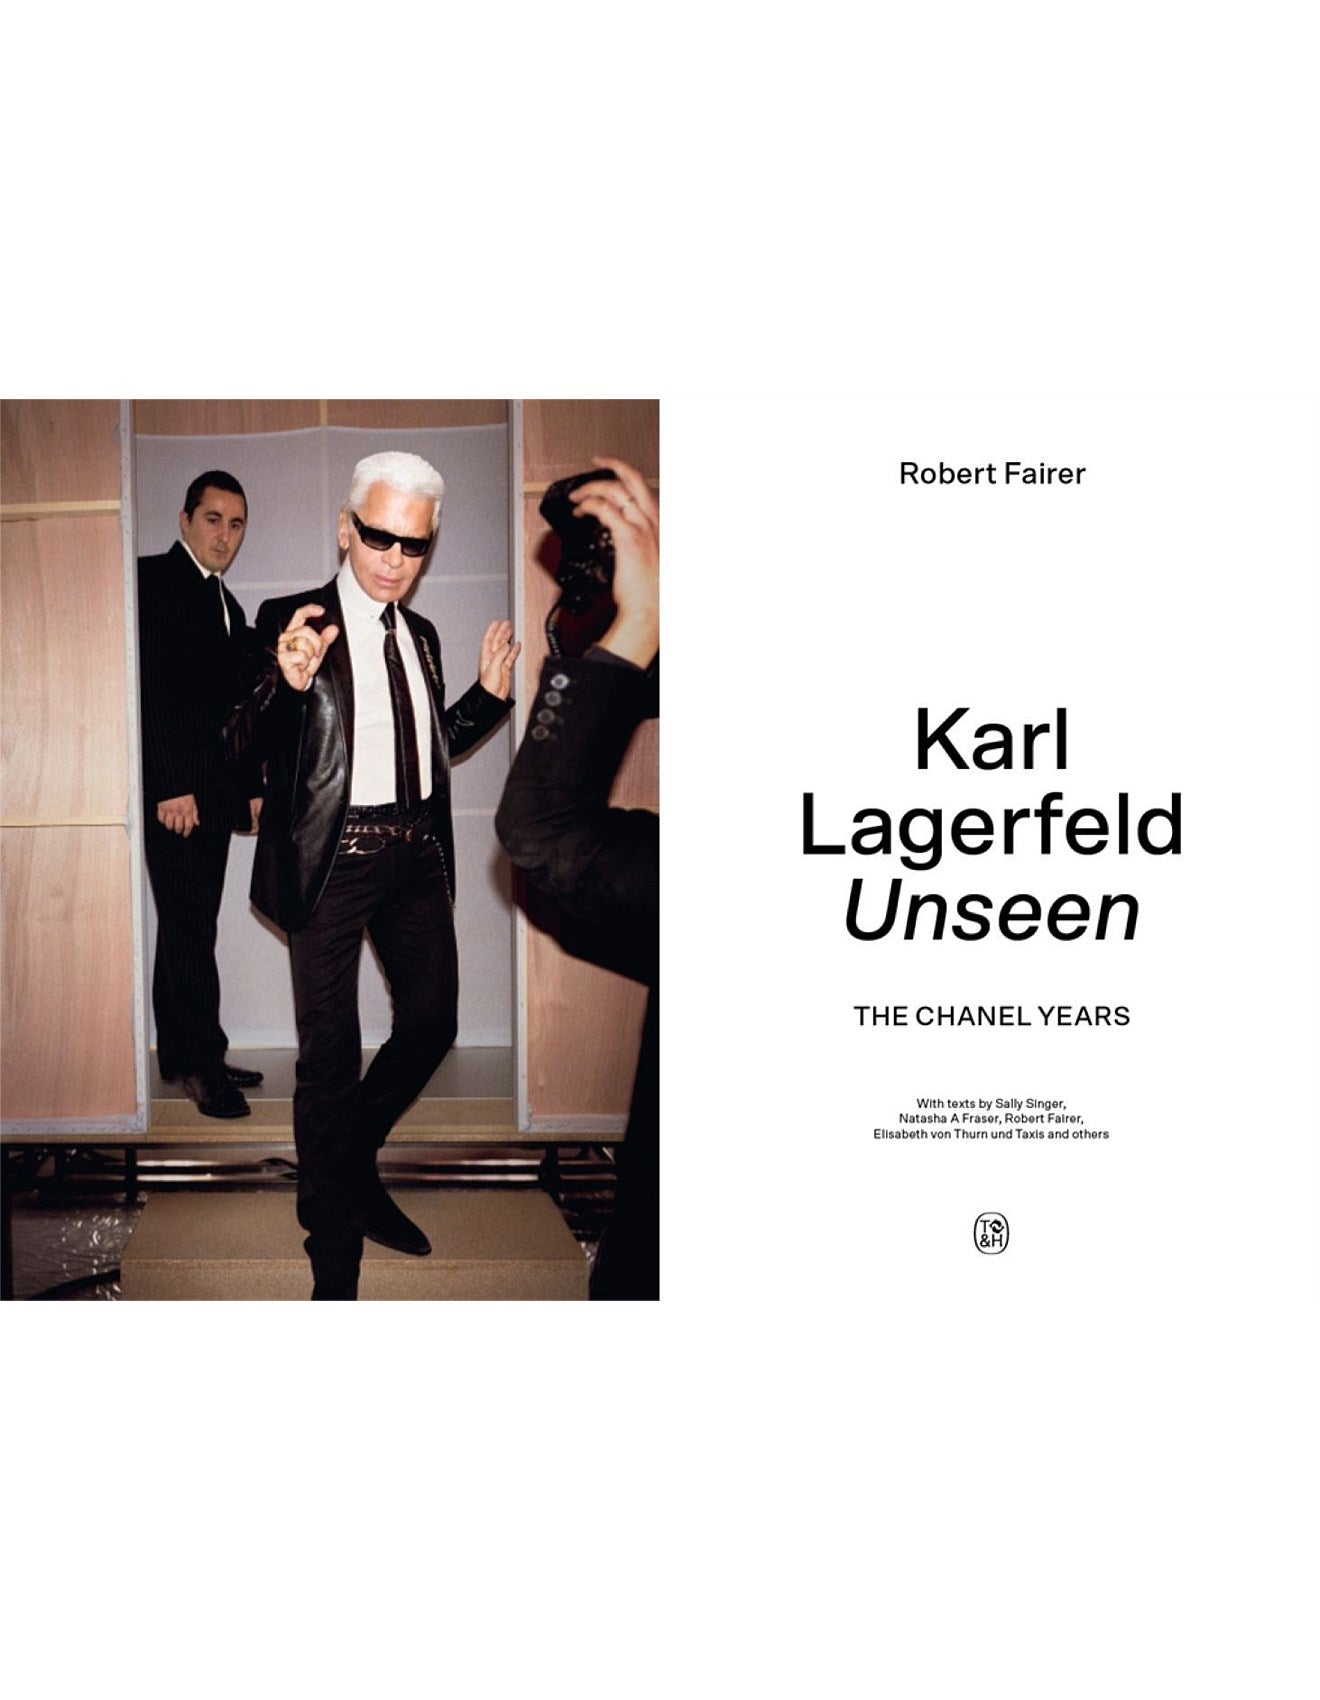 Karl Lagerfeld Unseen by Robert Fairer